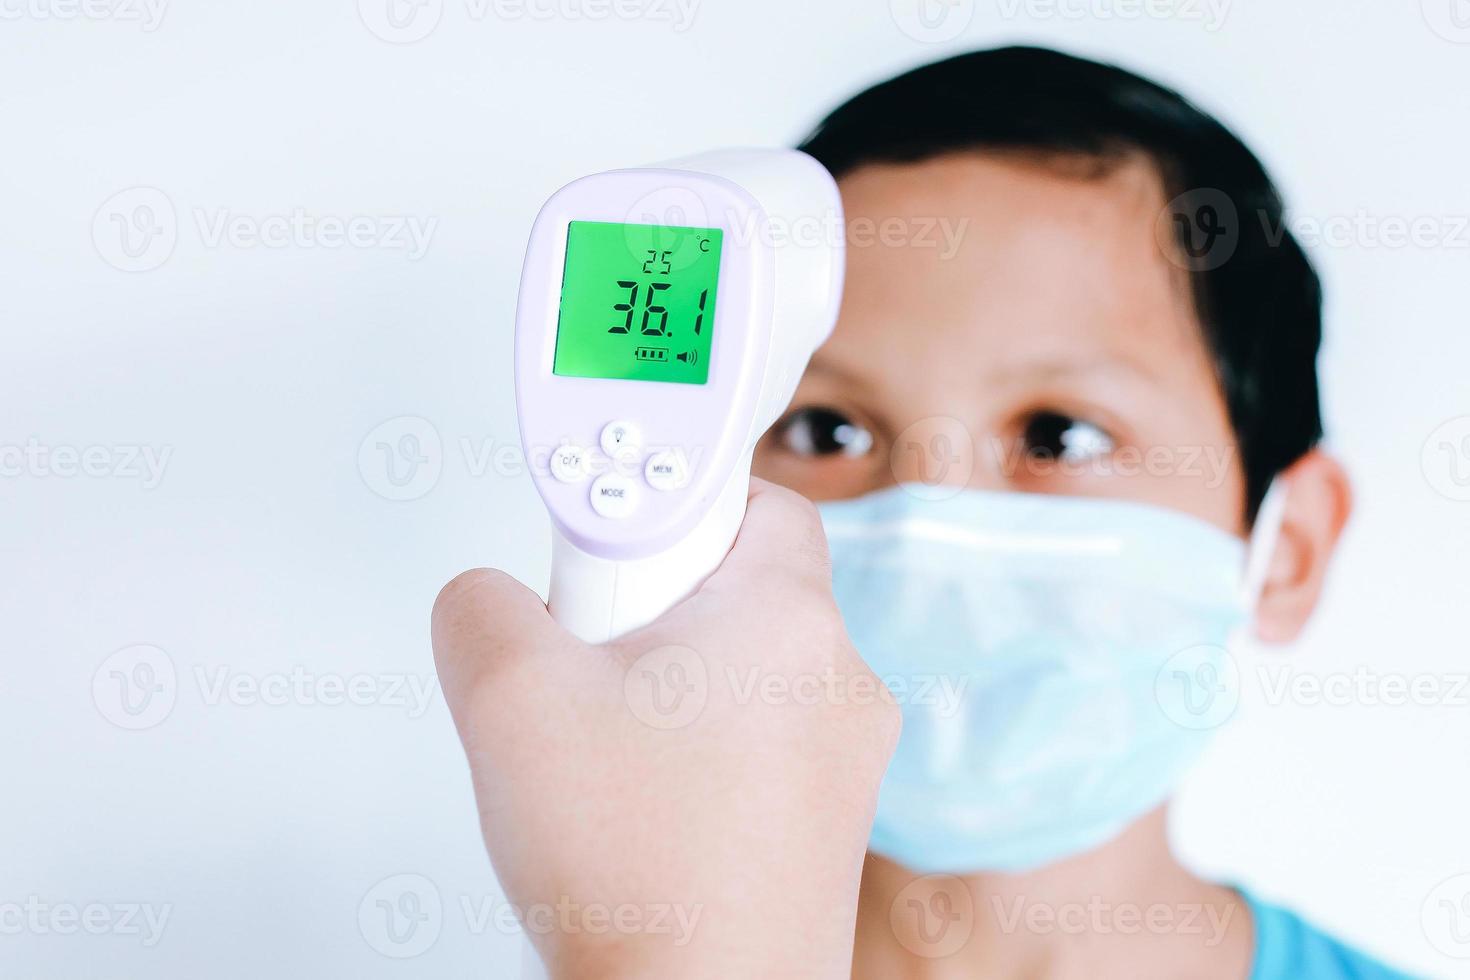 termometro a infrarossi in una mano che misura la temperatura del ragazzino asiatico con maschera chirurgica protettiva sul viso foto